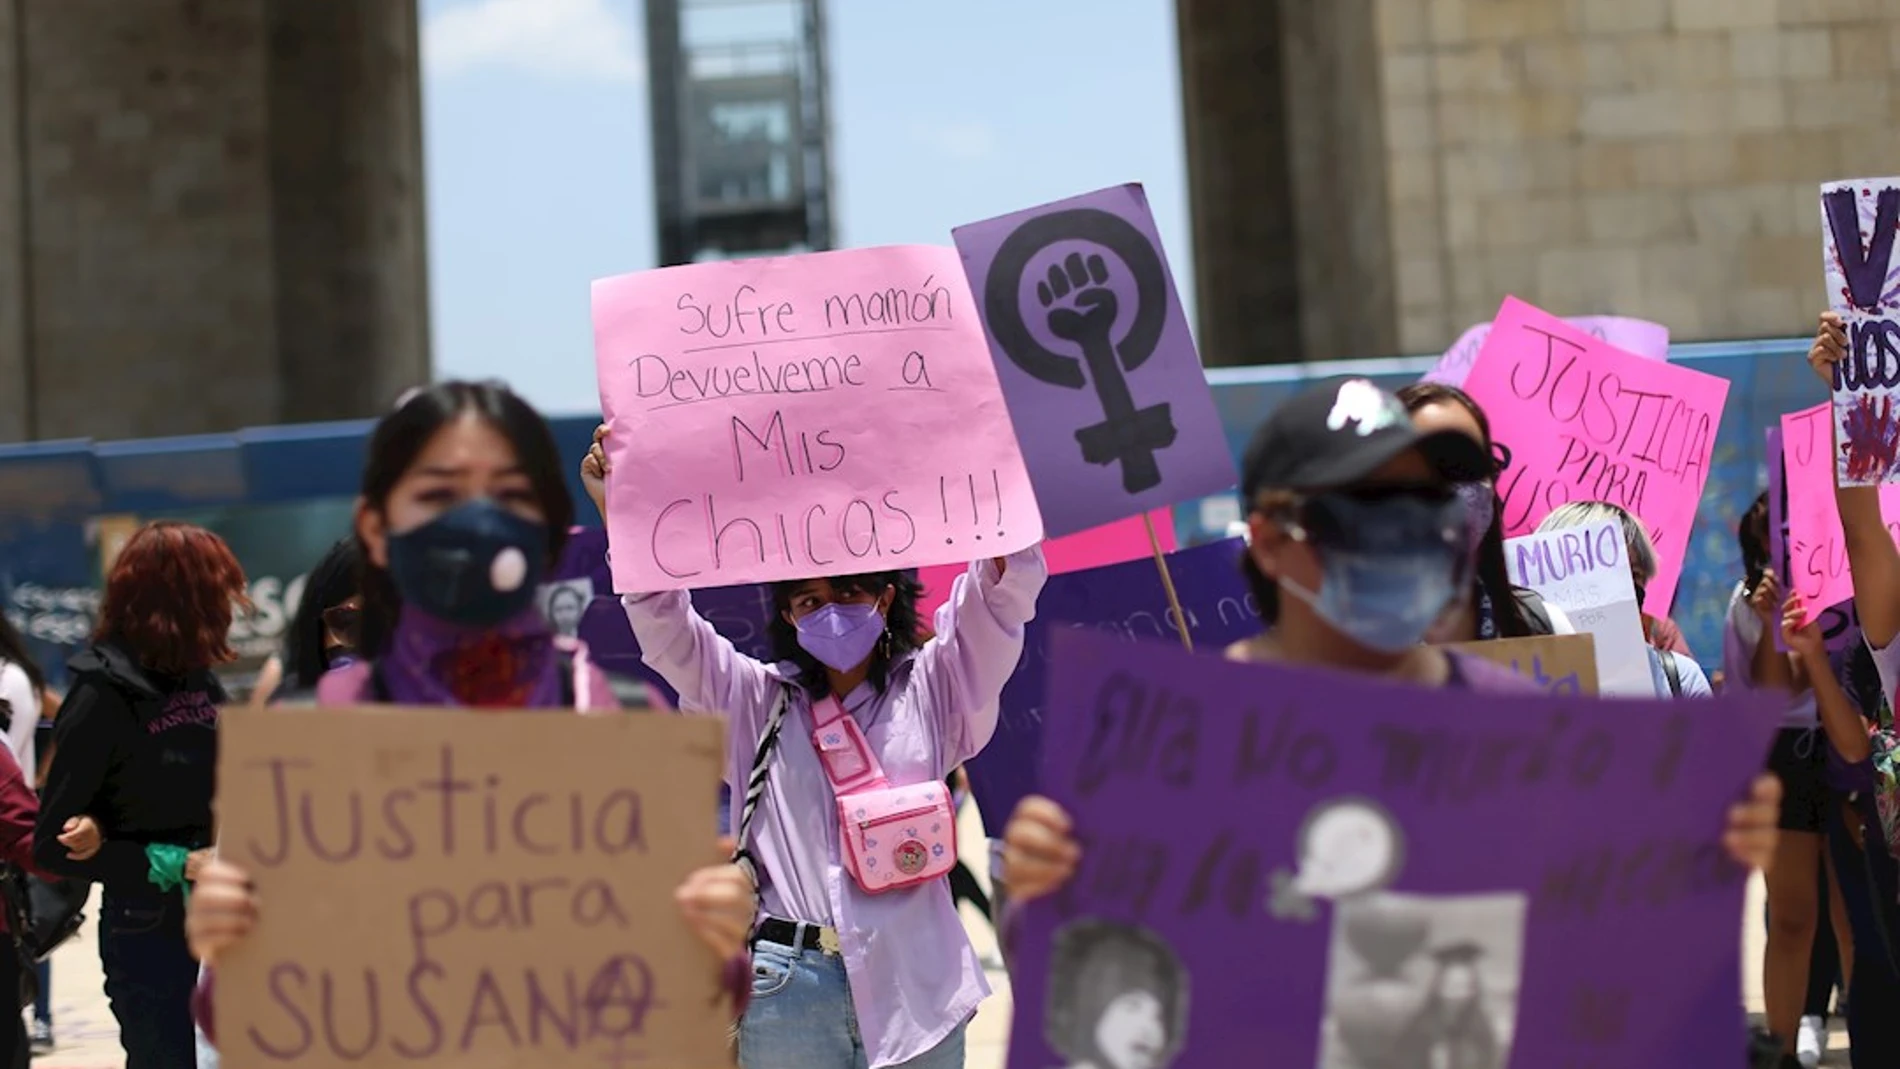 Los Puntos Violetas pretenden informar y concienciar contra la violencia de género 